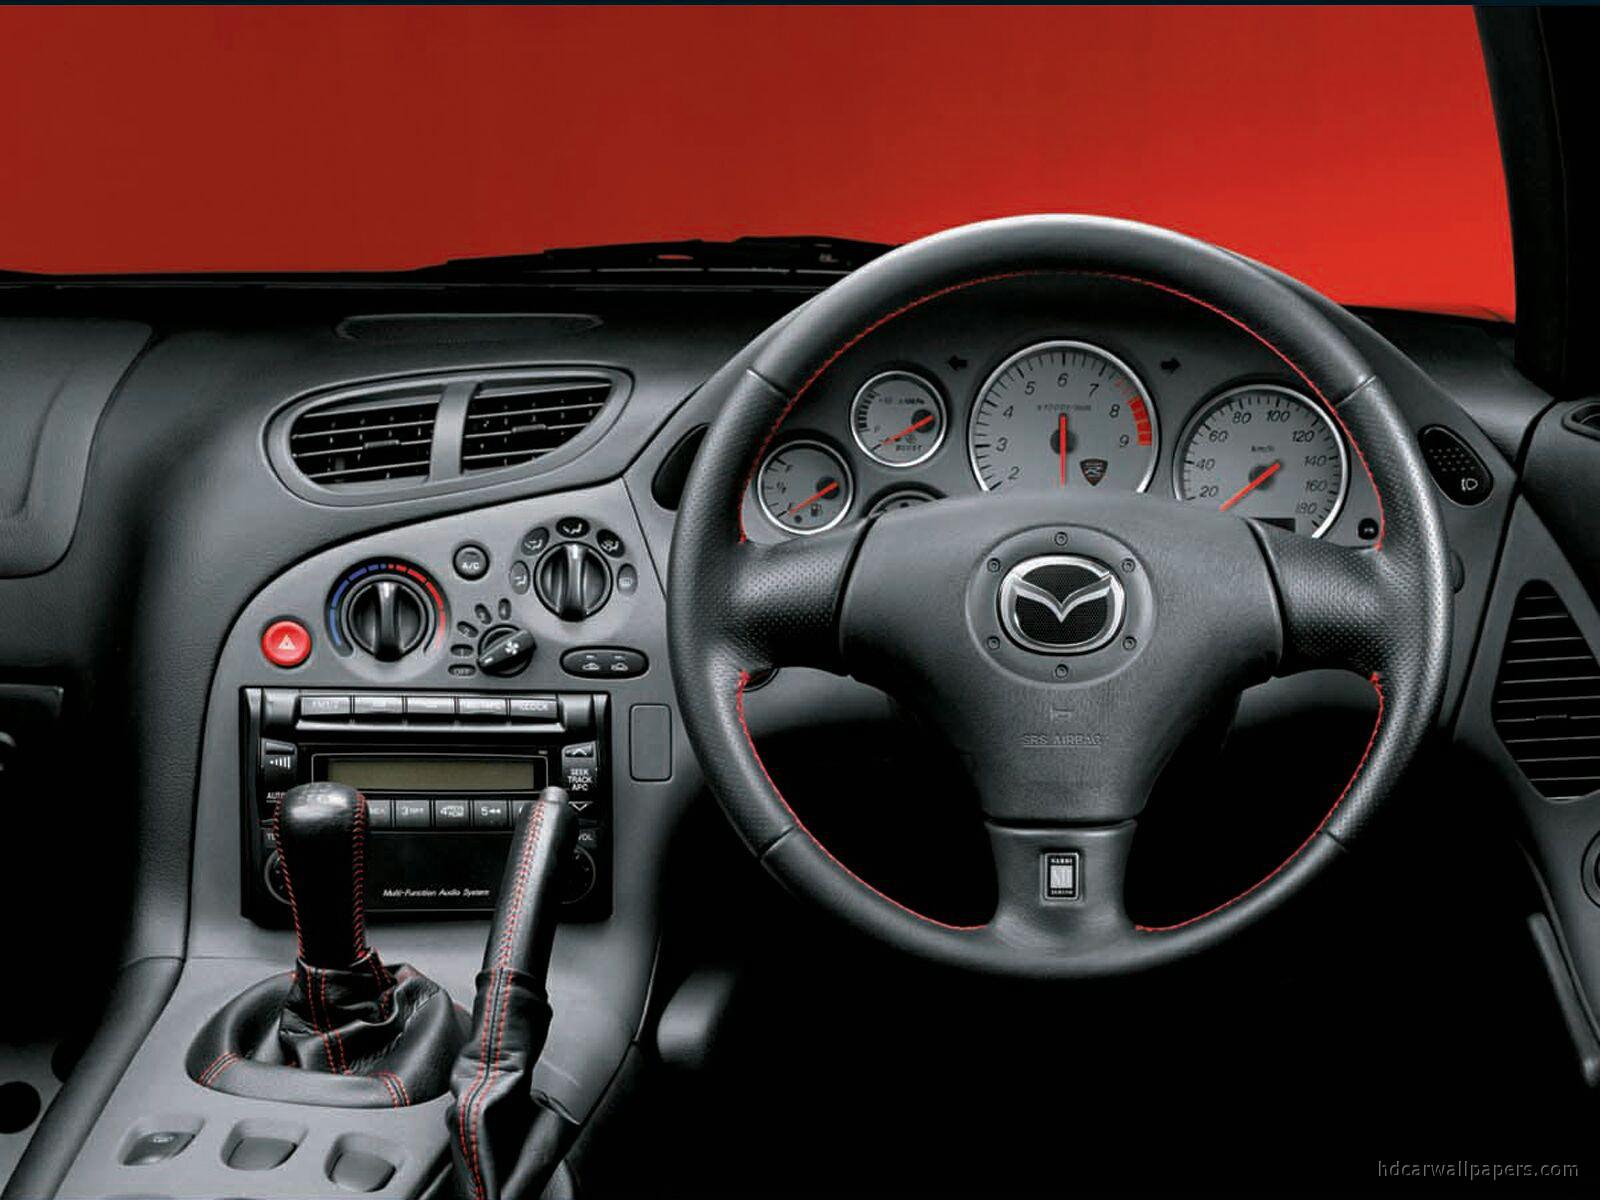 Mazda RX7 Interior Wallpaper. HD Car Wallpaper